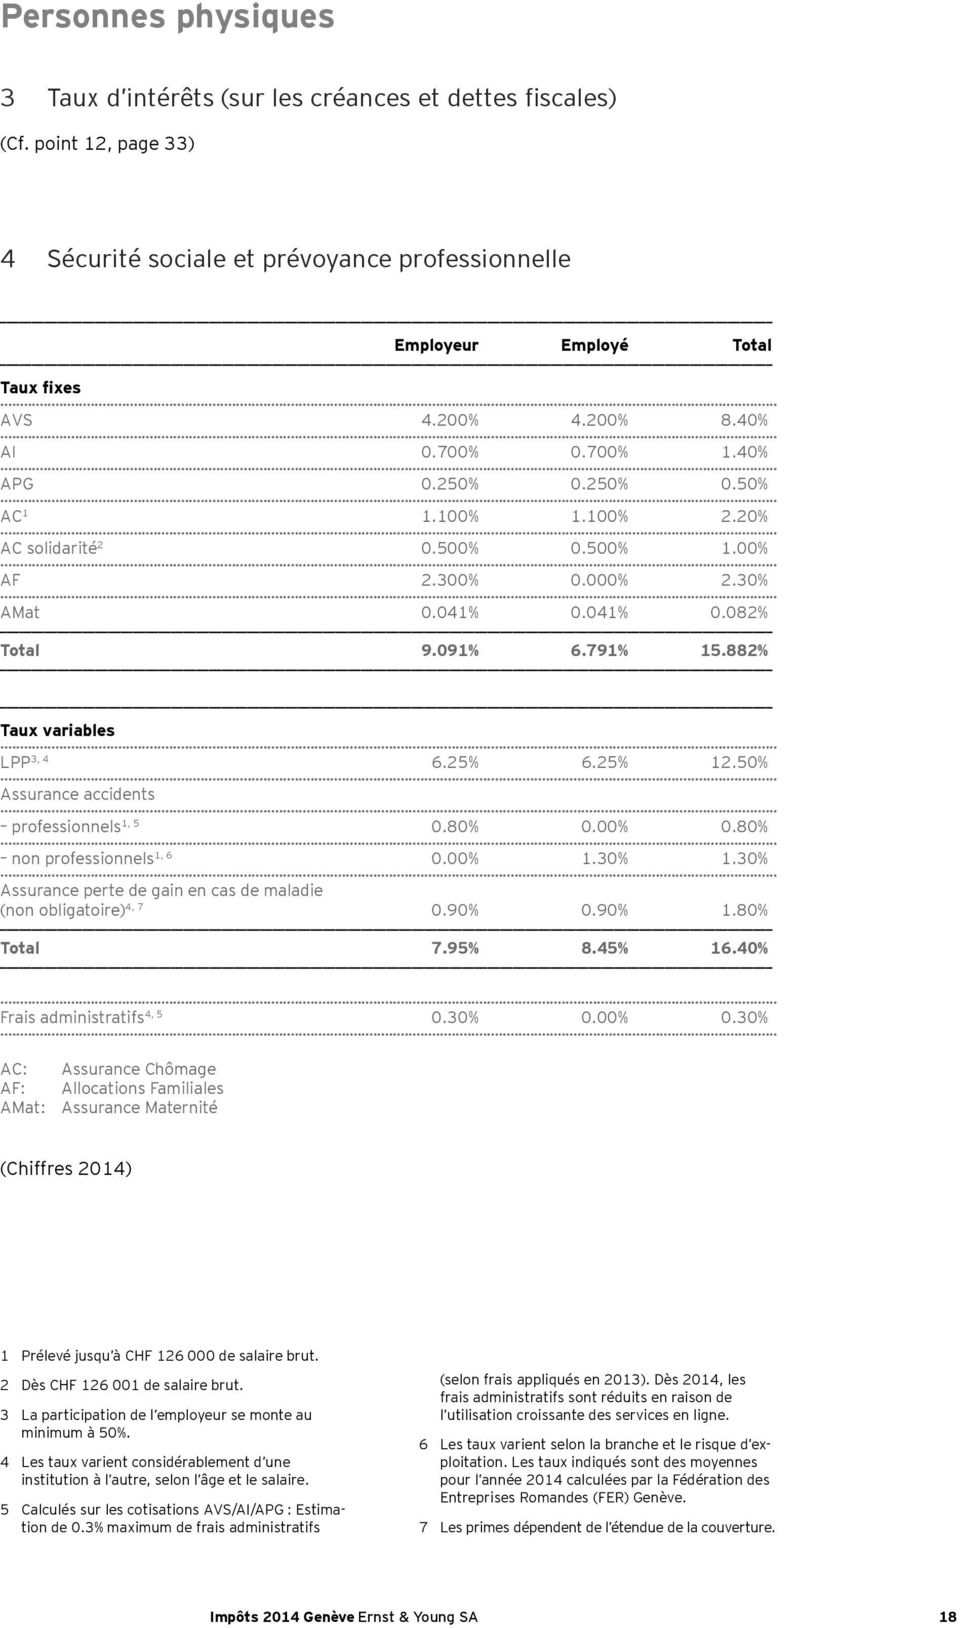 882% Taux variables LPP 3, 4 6.25% 6.25% 12.50% Assurance accidents professionnels 1, 5 0.80% 0.00% 0.80% non professionnels 1, 6 0.00% 1.30% 1.